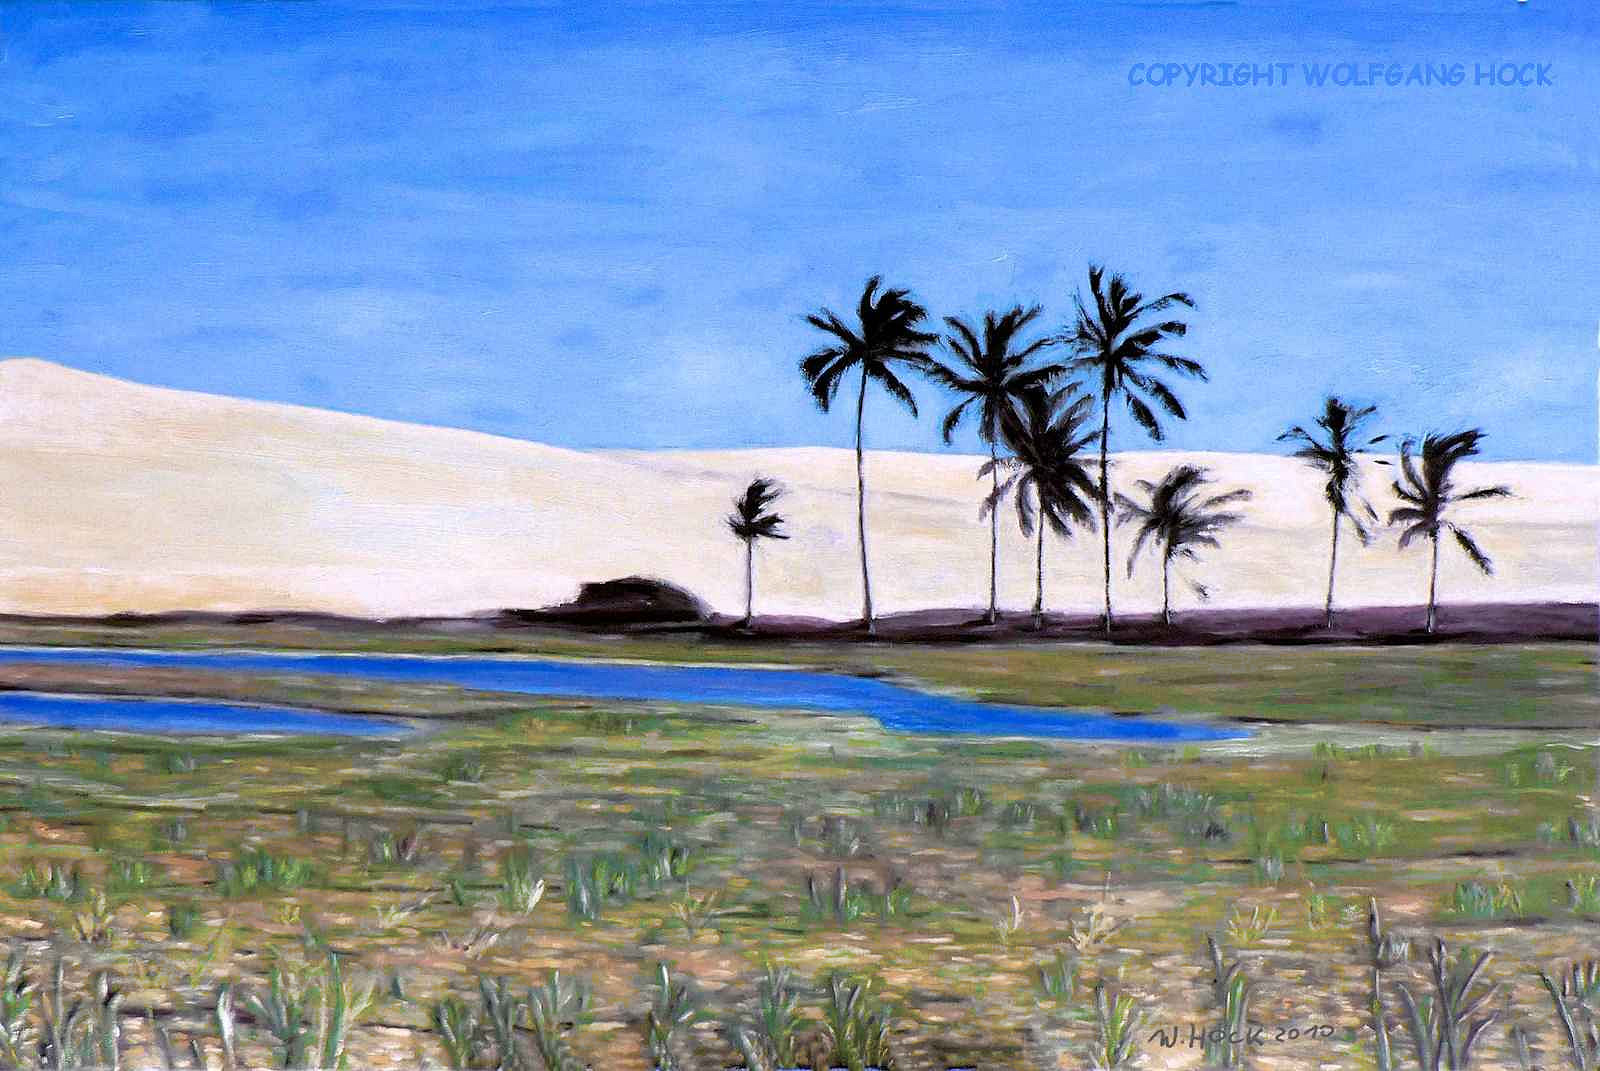 Taíba oasis 2010   Oil on canvas 150 x 100 cm